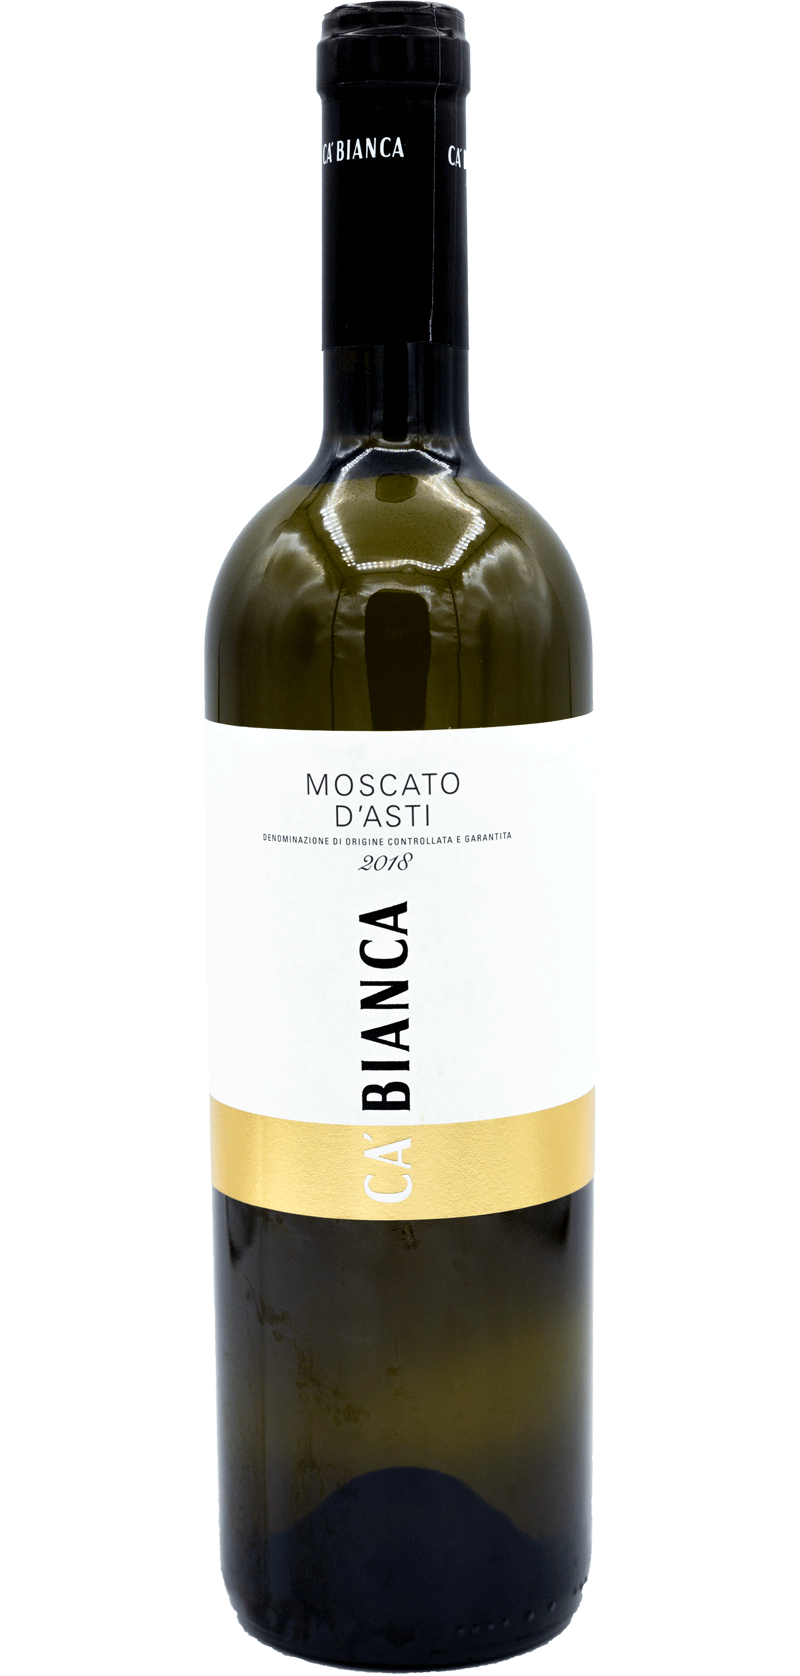 Ca Bianca de Moscato d’Asti – 2018 - Italiaanse Witte wijn